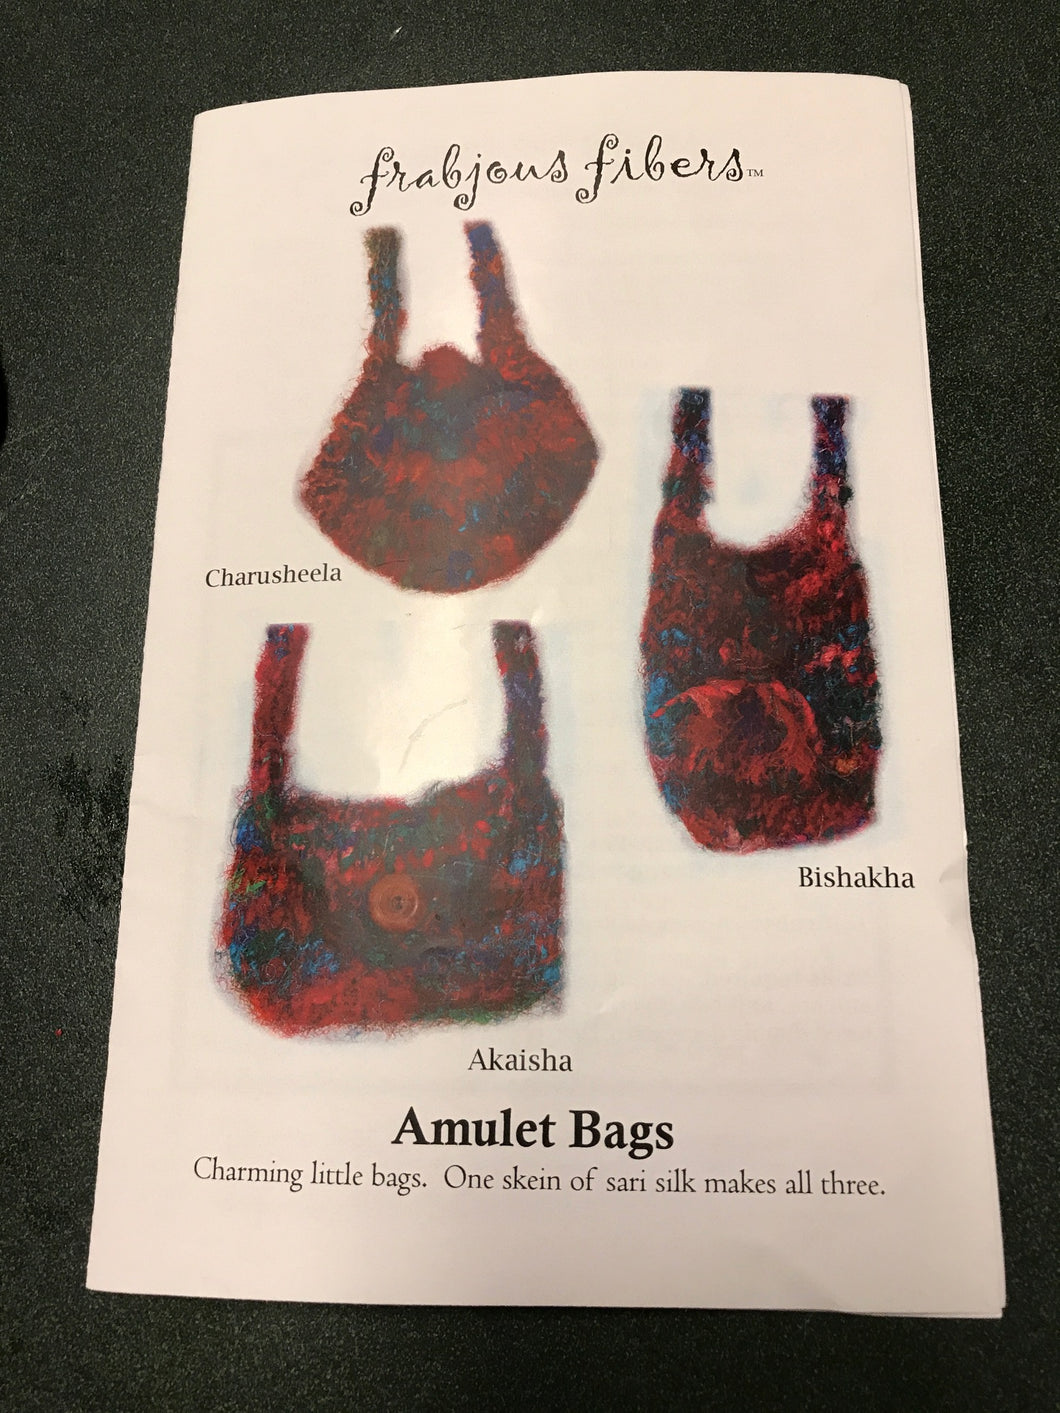 SOLD Knitting Kit -Three Amulet Bags -Handspun Vegan Yarn - Recycled Sari Cotton